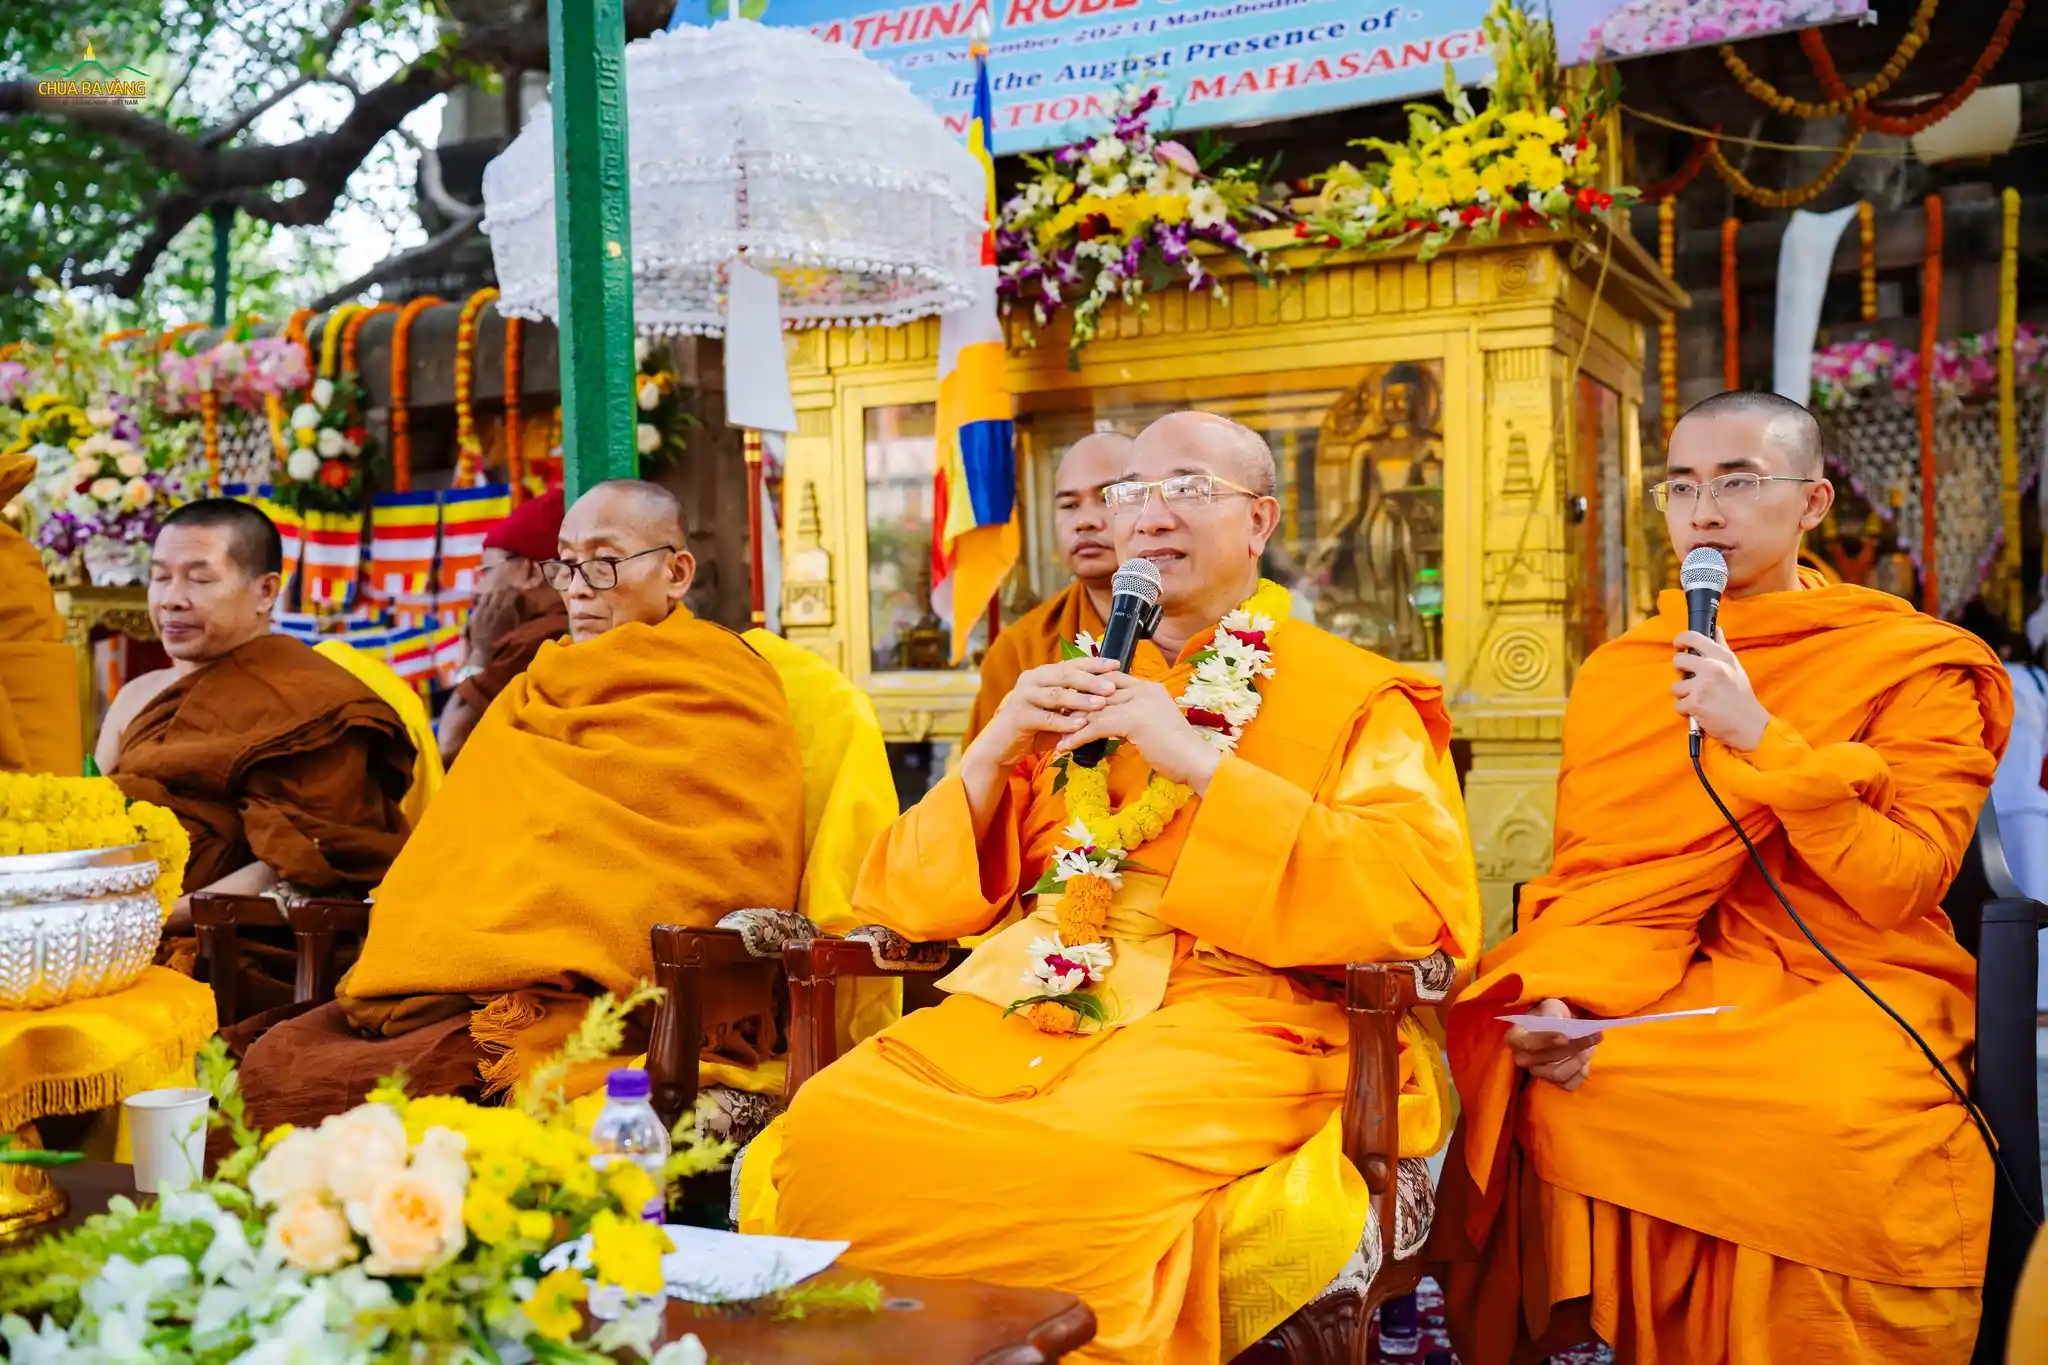 Trong khuôn khổ lễ Dâng y Kathina, Sư Phụ Thích Trúc Thái Minh đã có một thời Pháp thoại, giảng lời Đức Phật dạy trong kinh Pháp Cú